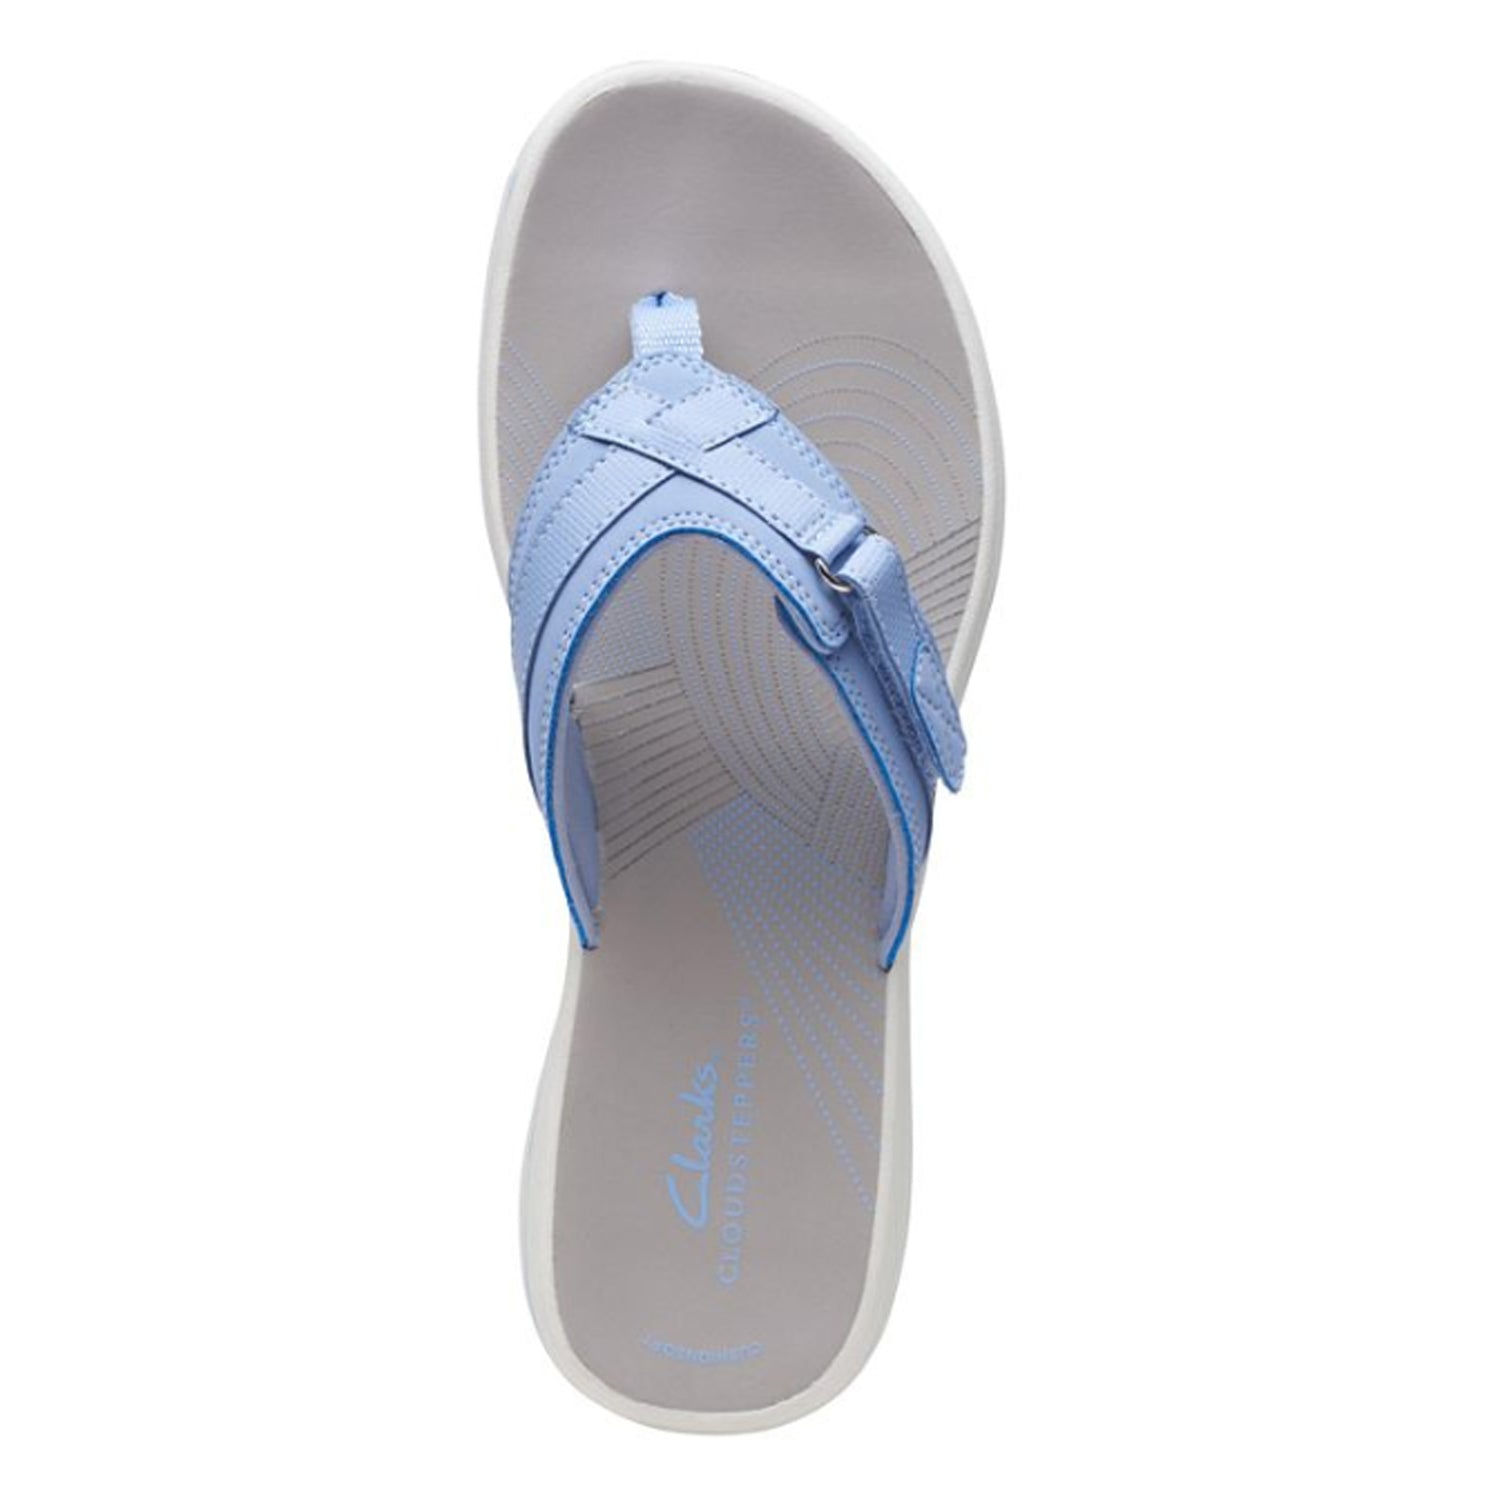 Peltz Shoes  Women's Clarks Breeze Sea Sandal LAVENDER 26169814